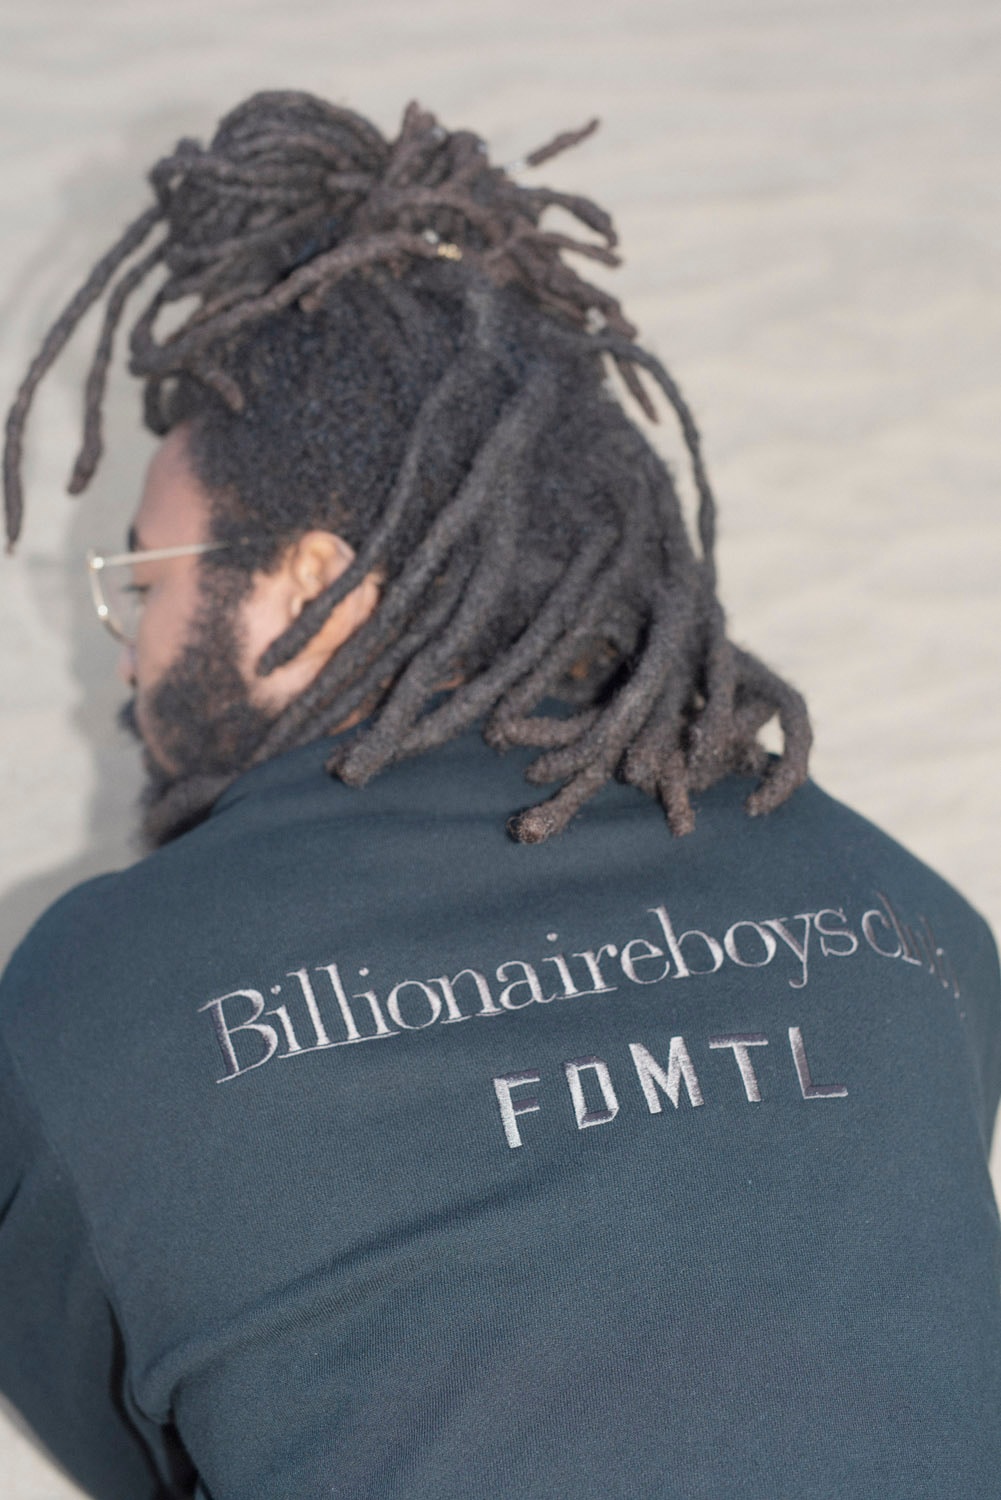 ビリオネア・ボーイズ・クラブ Pharrell Williams（ファレル・ウィリアムス） 和洋折衷のオリジナル柄を用いた Billionaire Boys Club x FDMTL のコラボコレクションが発売